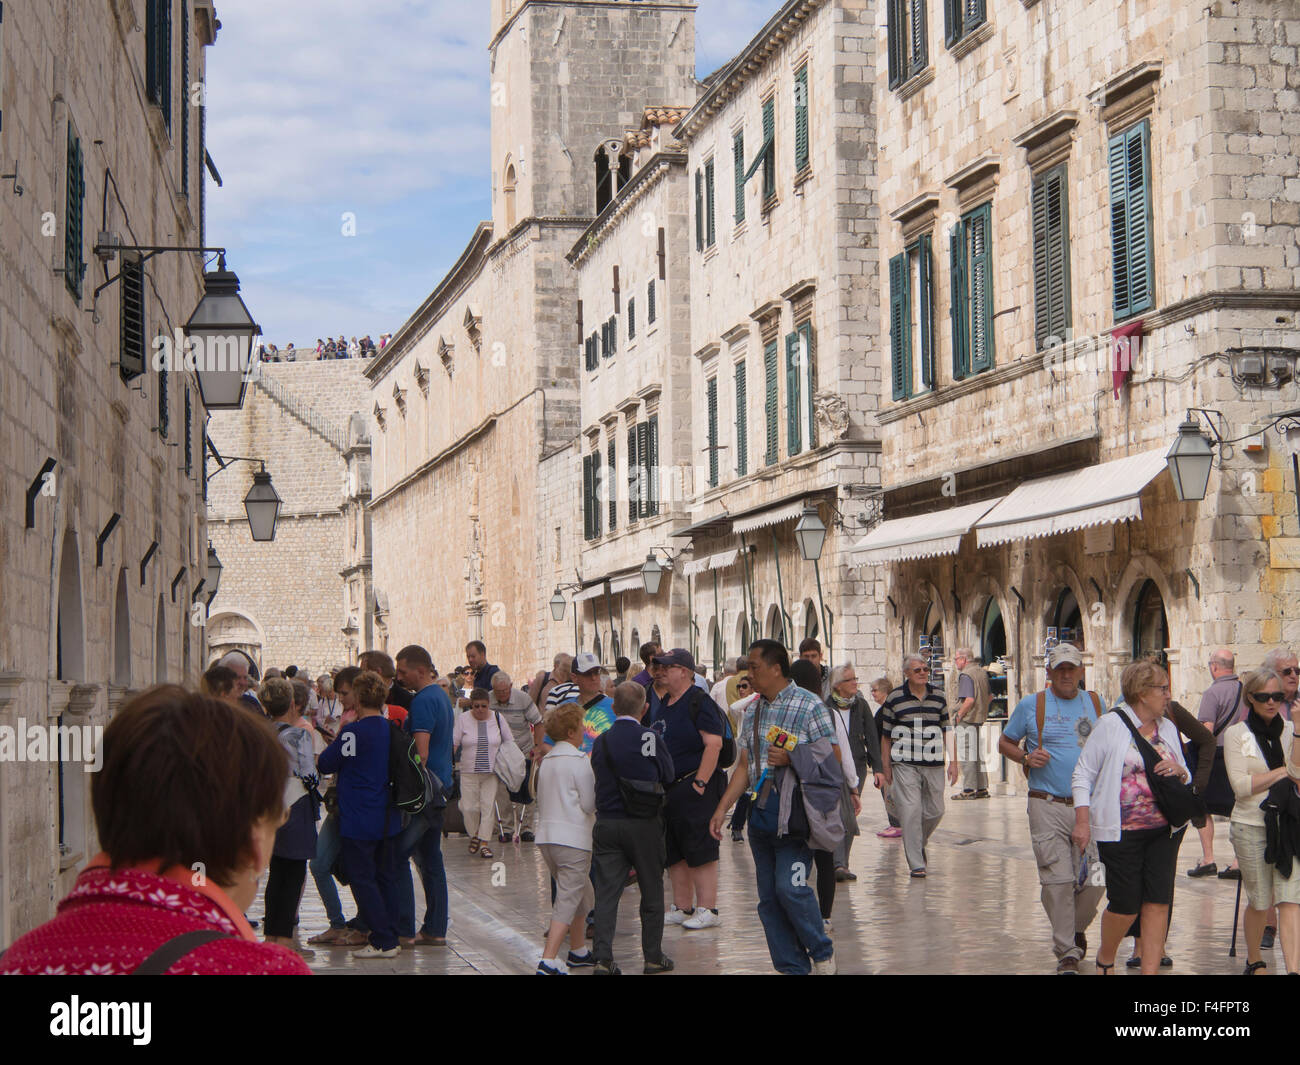 Placa (Stradun ) rue principale de la vieille ville de Dubrovnik Croatie site du patrimoine mondial de l'Unesco, encombrée de touristes Banque D'Images